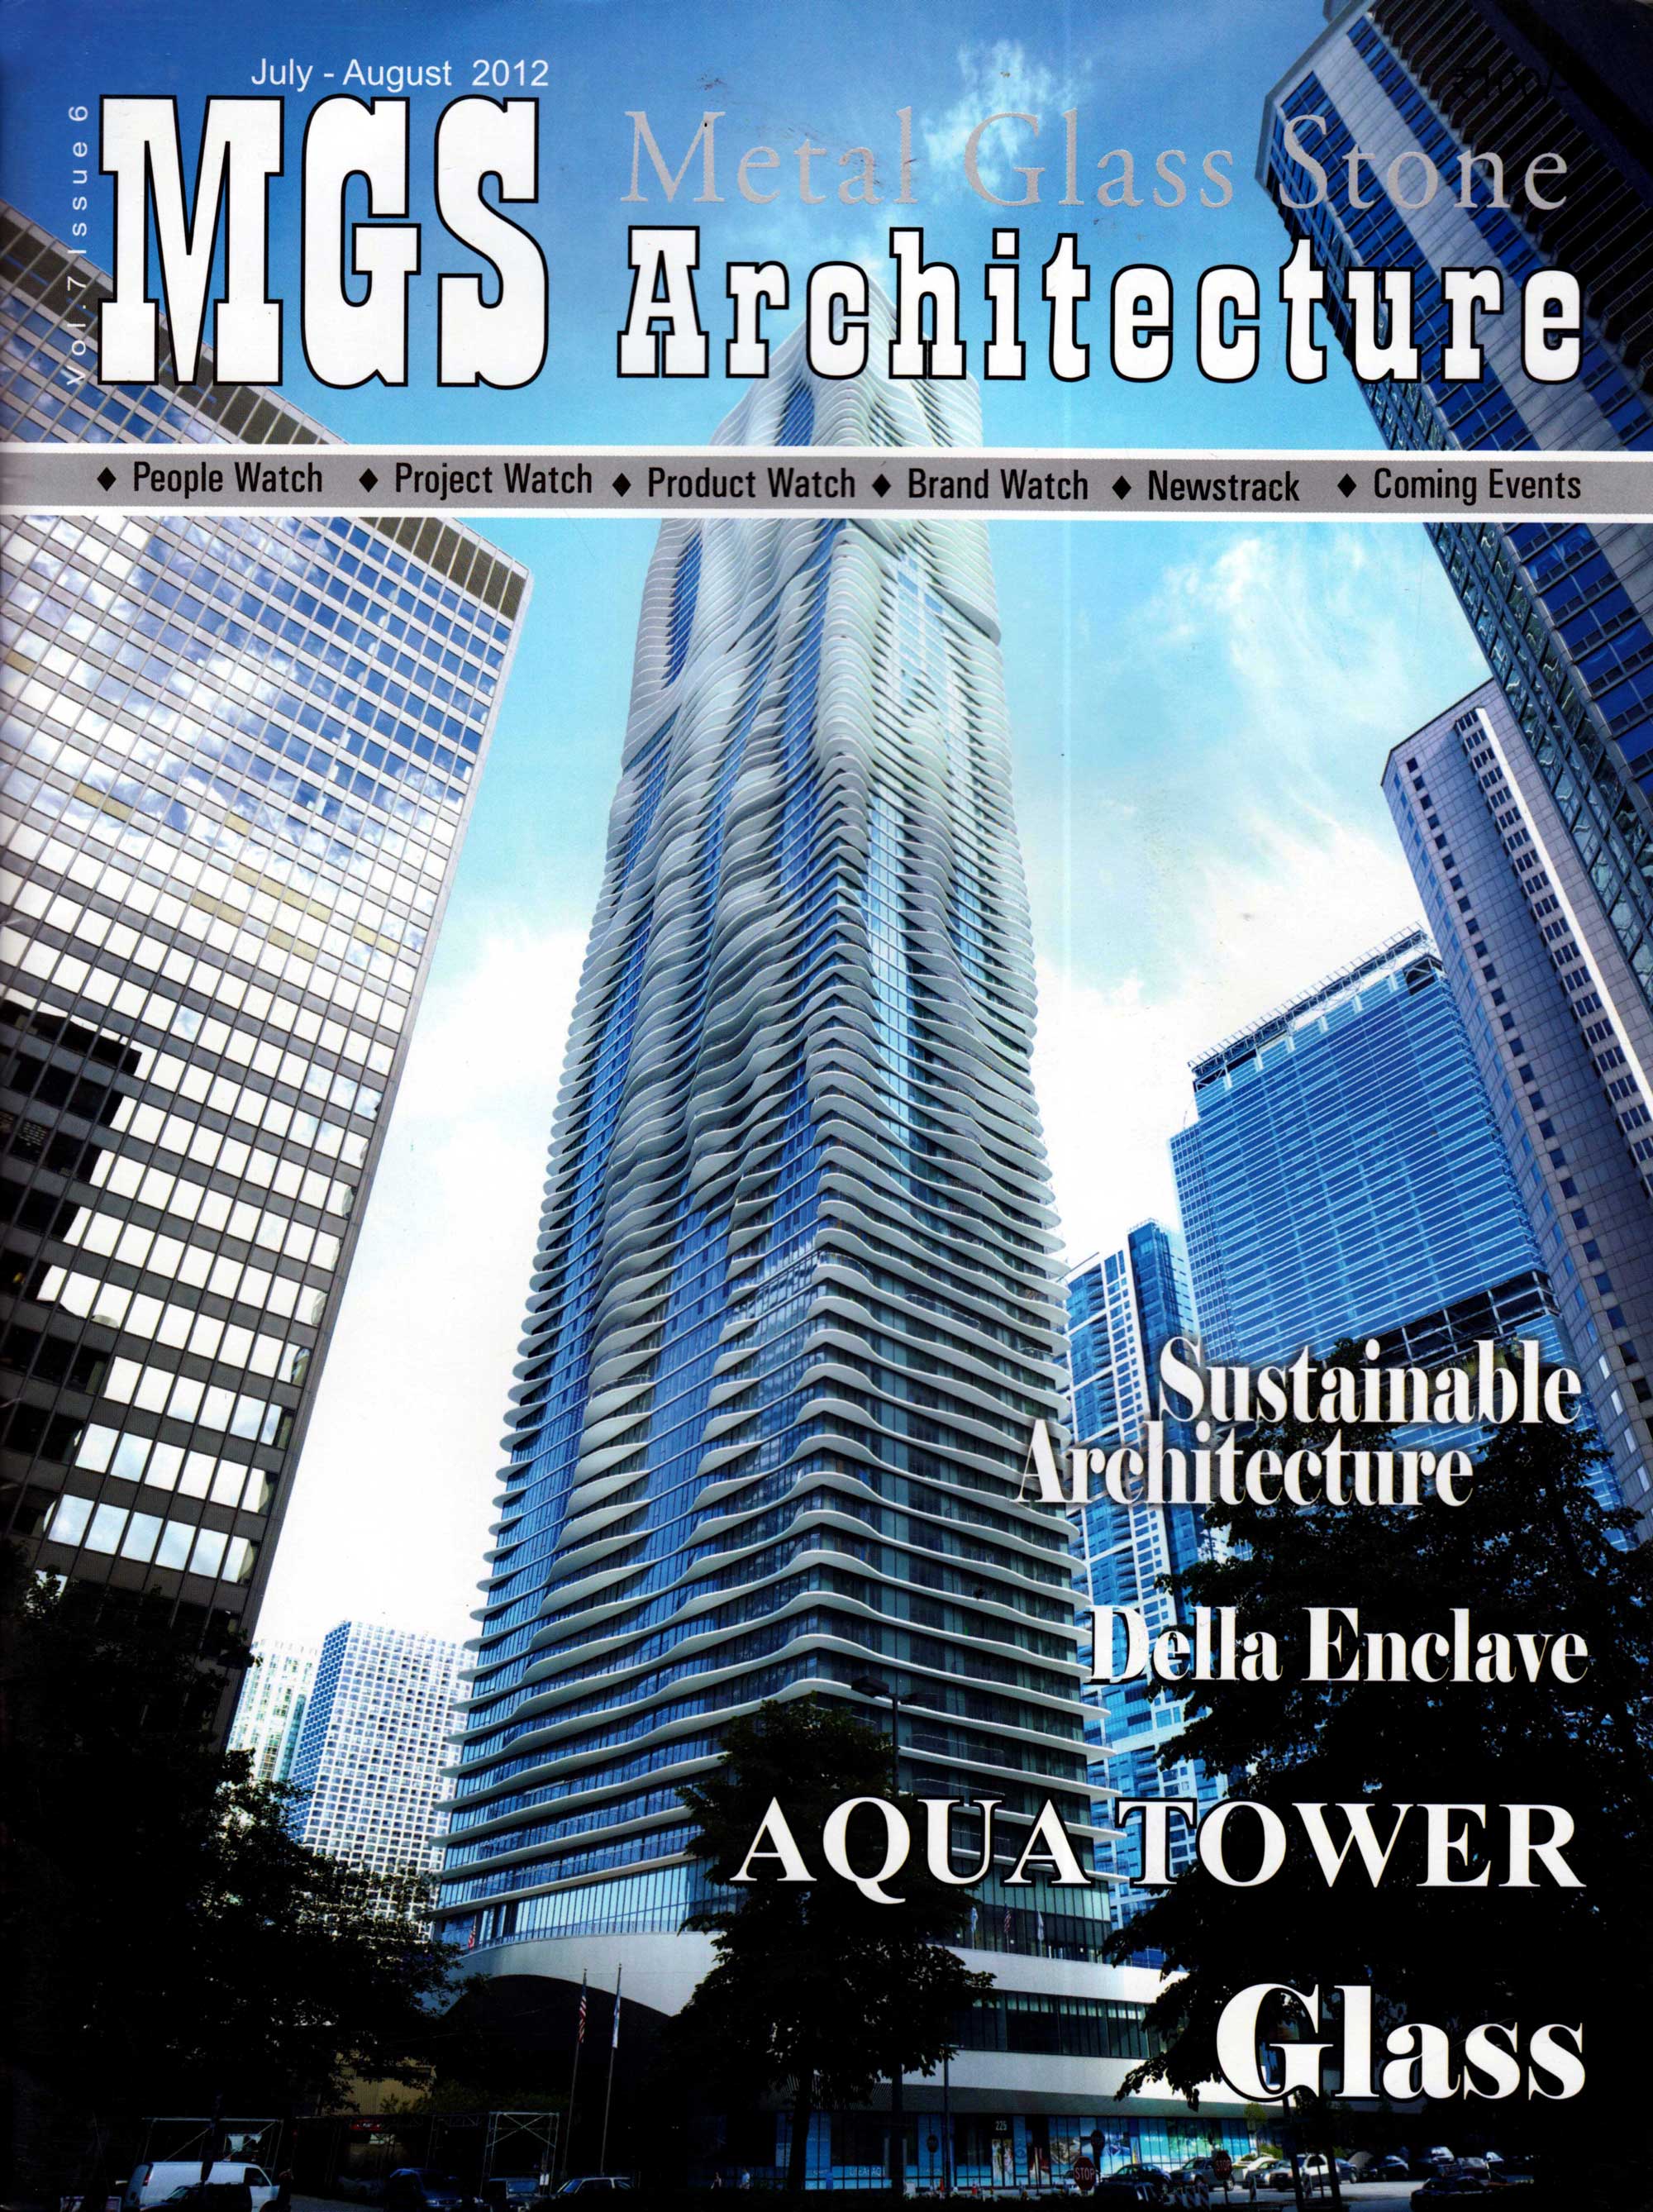 Della News Release on MGS Architecture